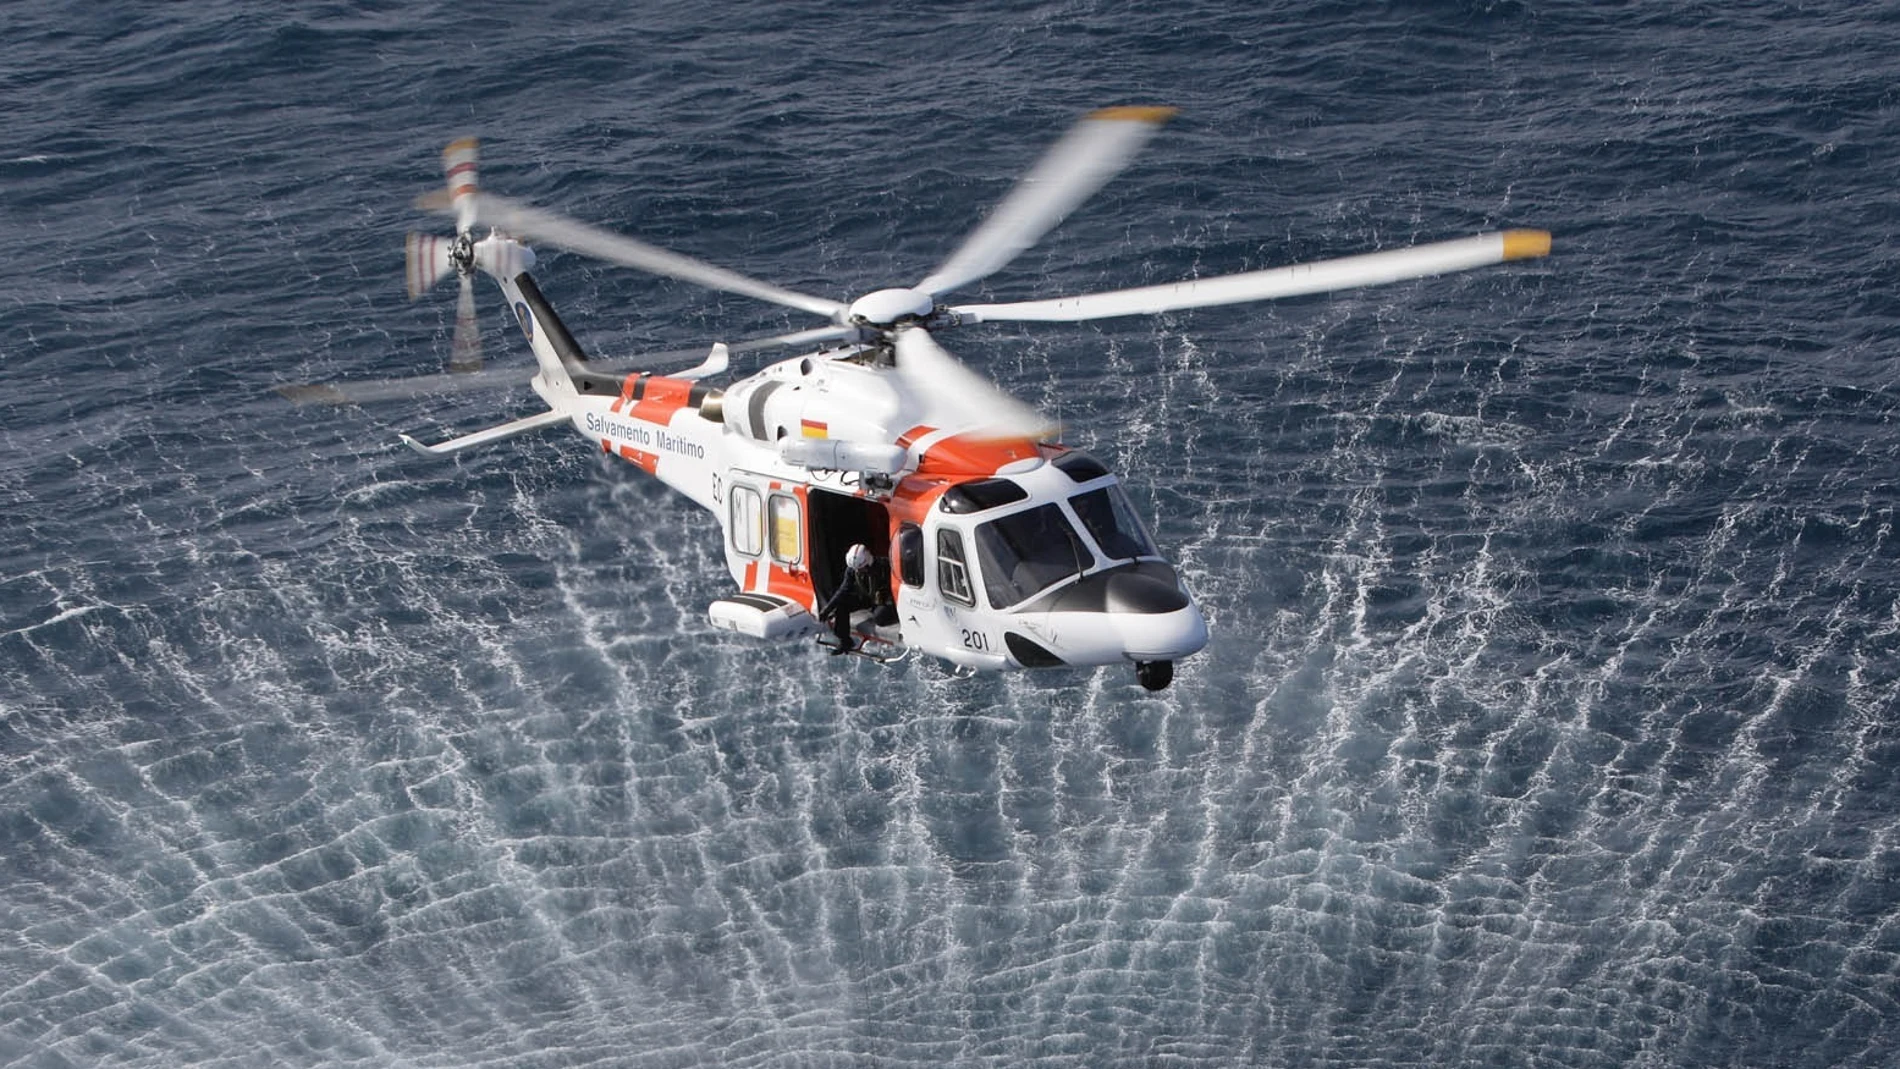 Helicóptero Helimer 201 de Salvamento Marítimo